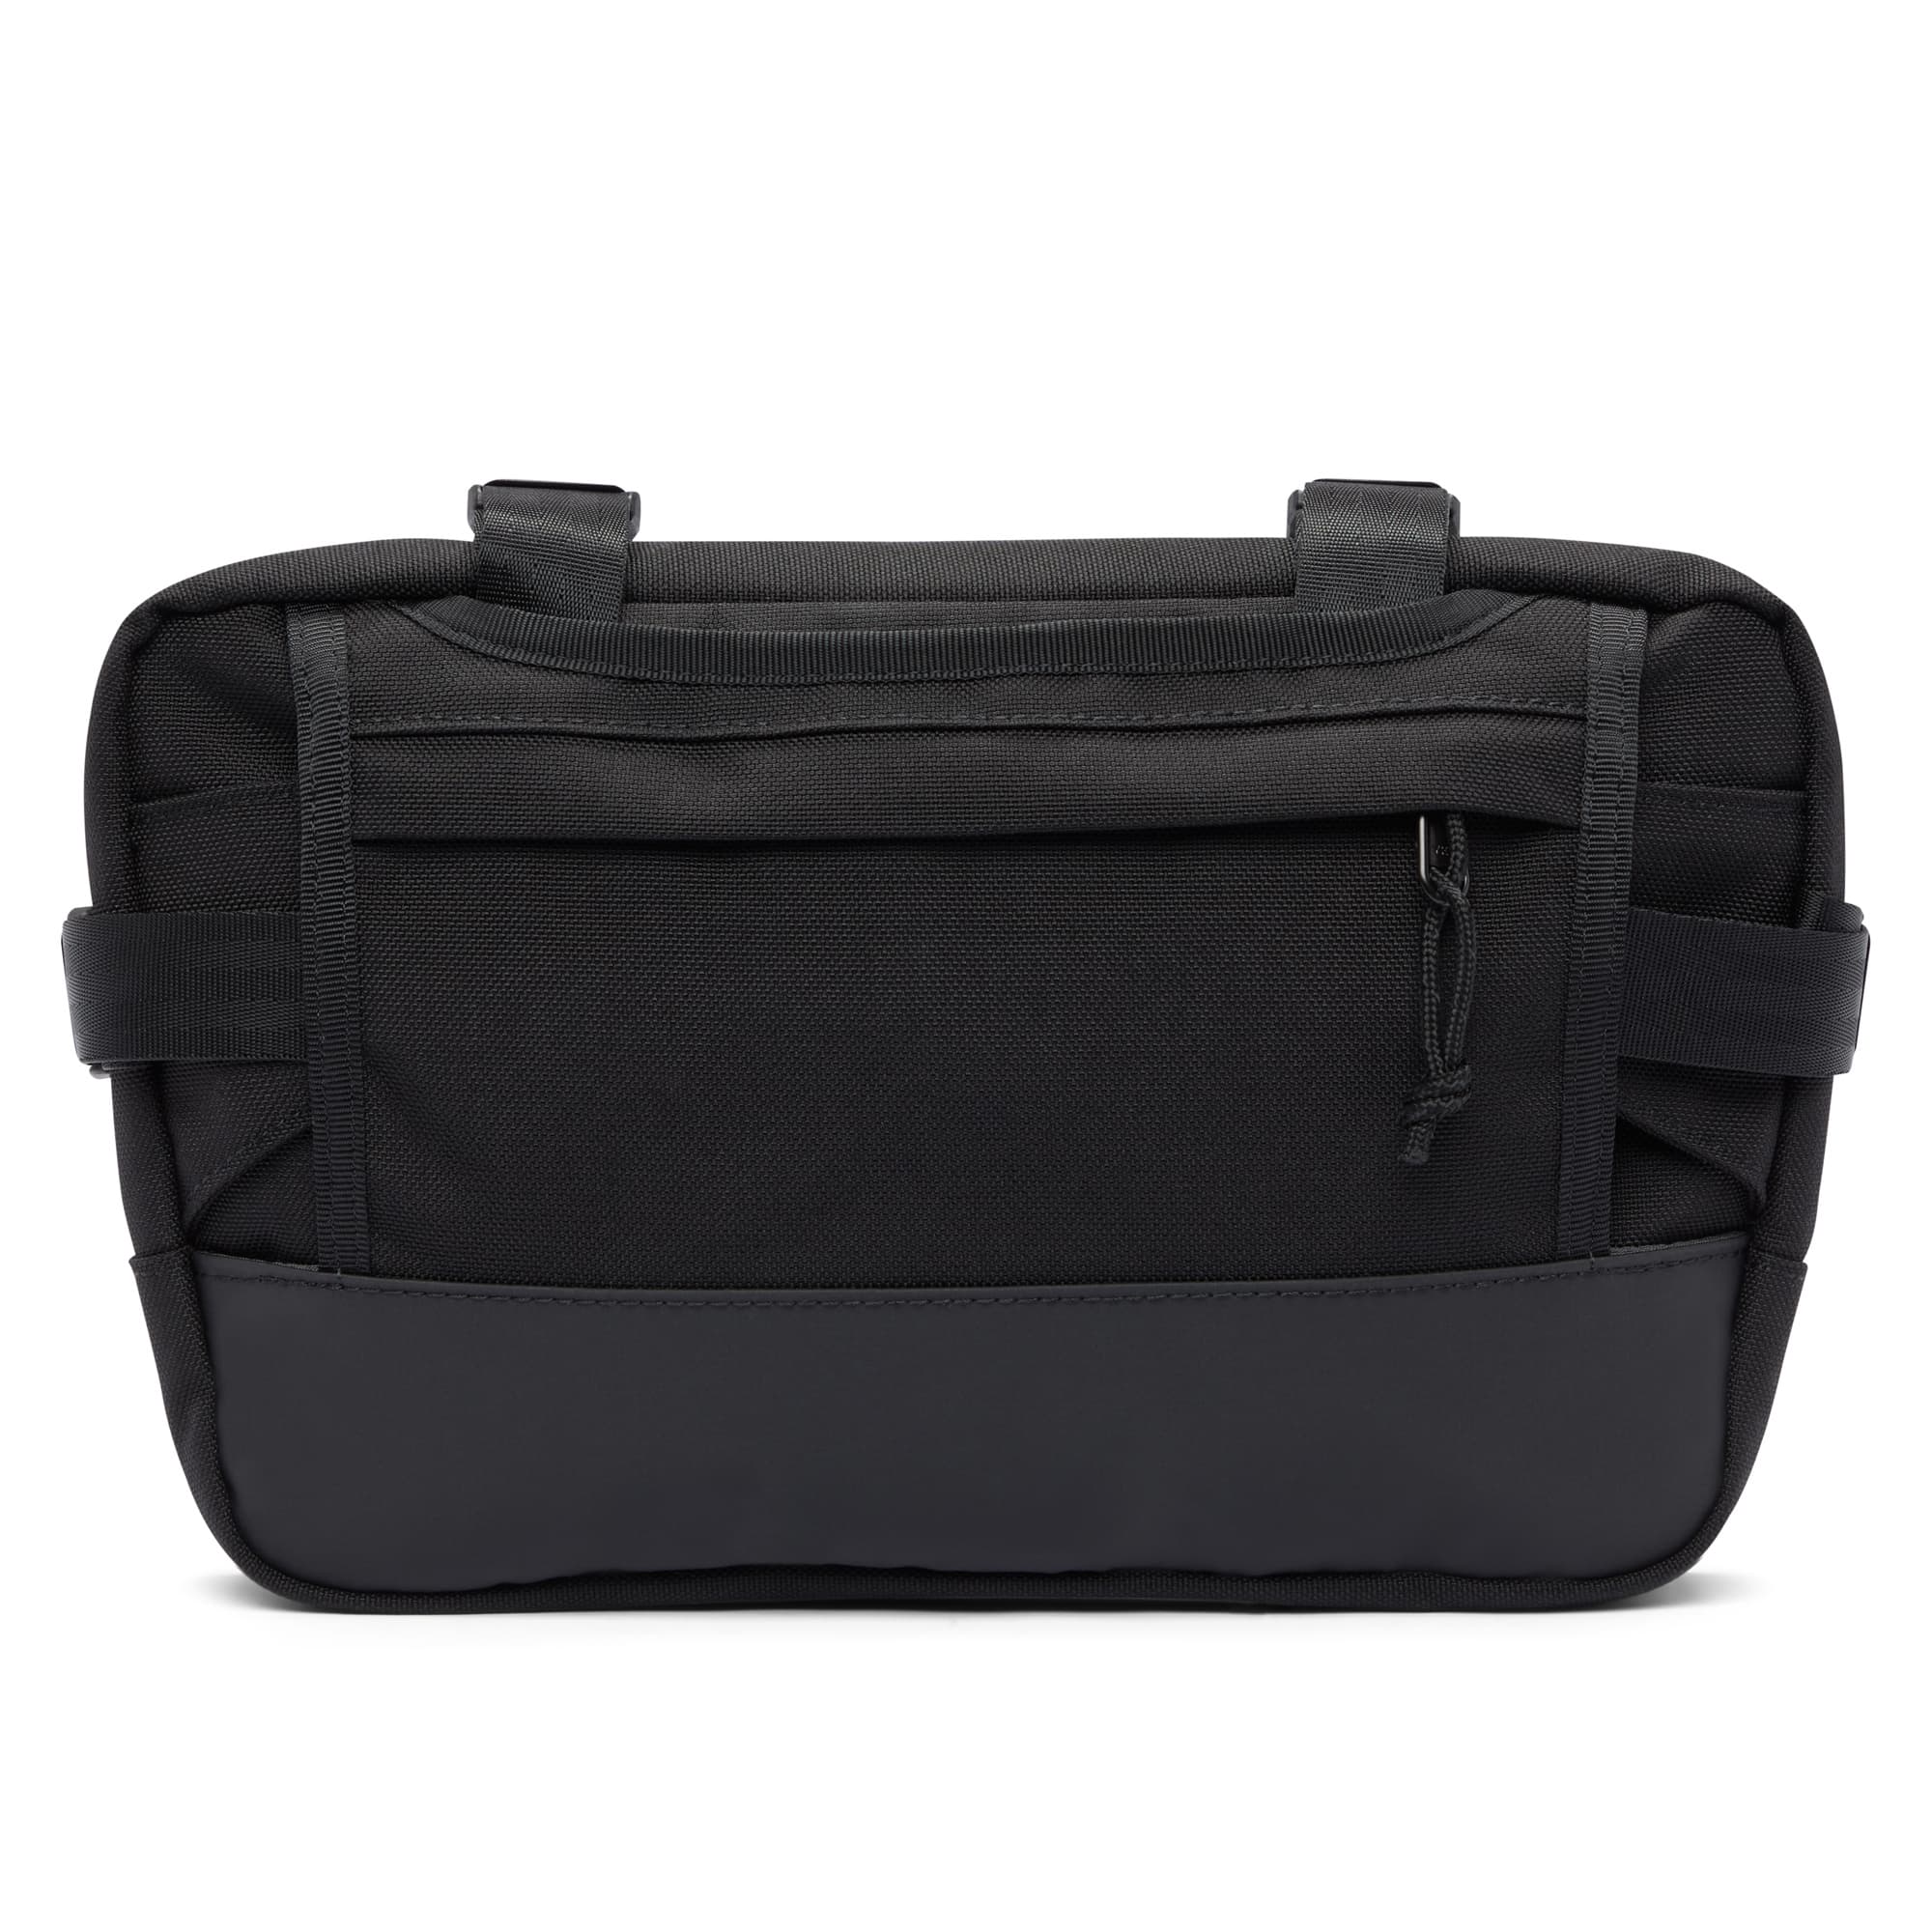 Medium size frame bag & sling in black strap tuck detail #color_black